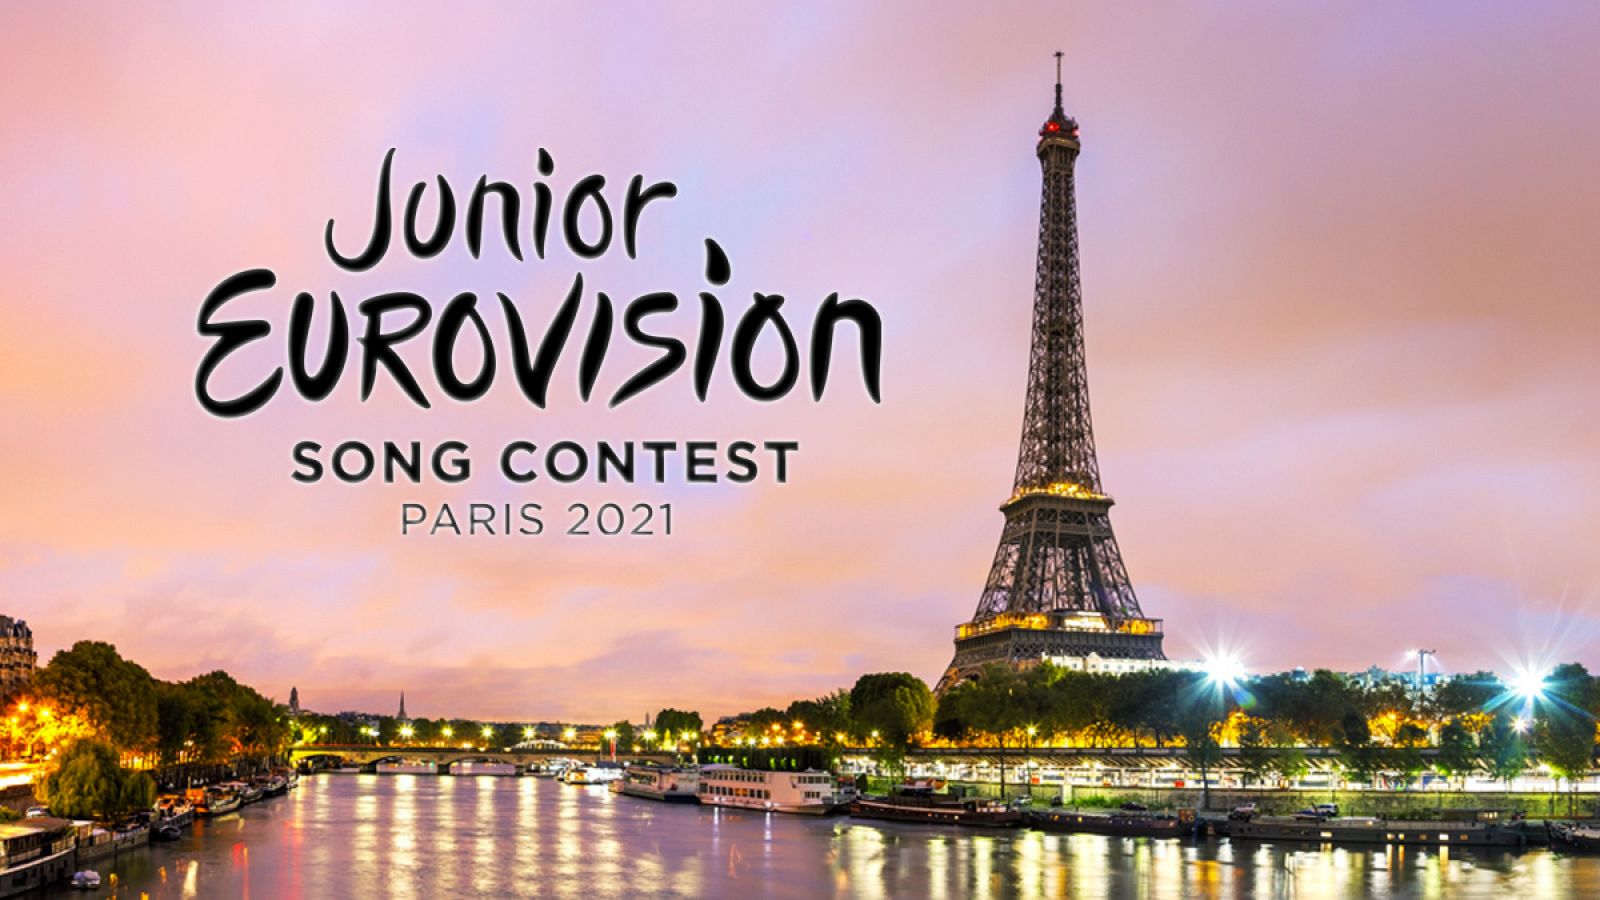 París es la ciudad anfitriona del Festival de Eurovisión Junior 2021.